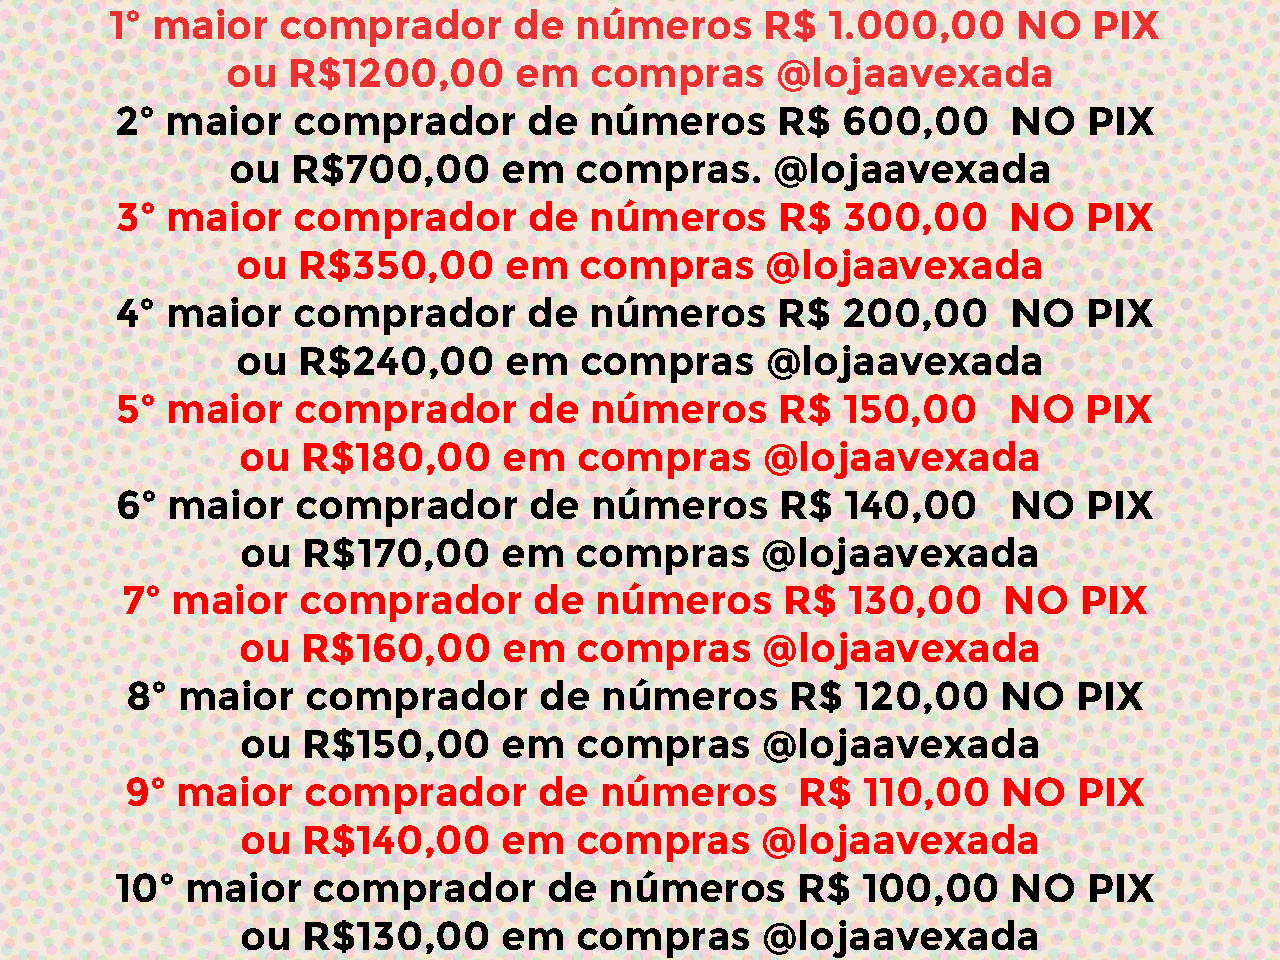 IPHONE 14 PRO MAX OU R$ 7000,00 NO PIX